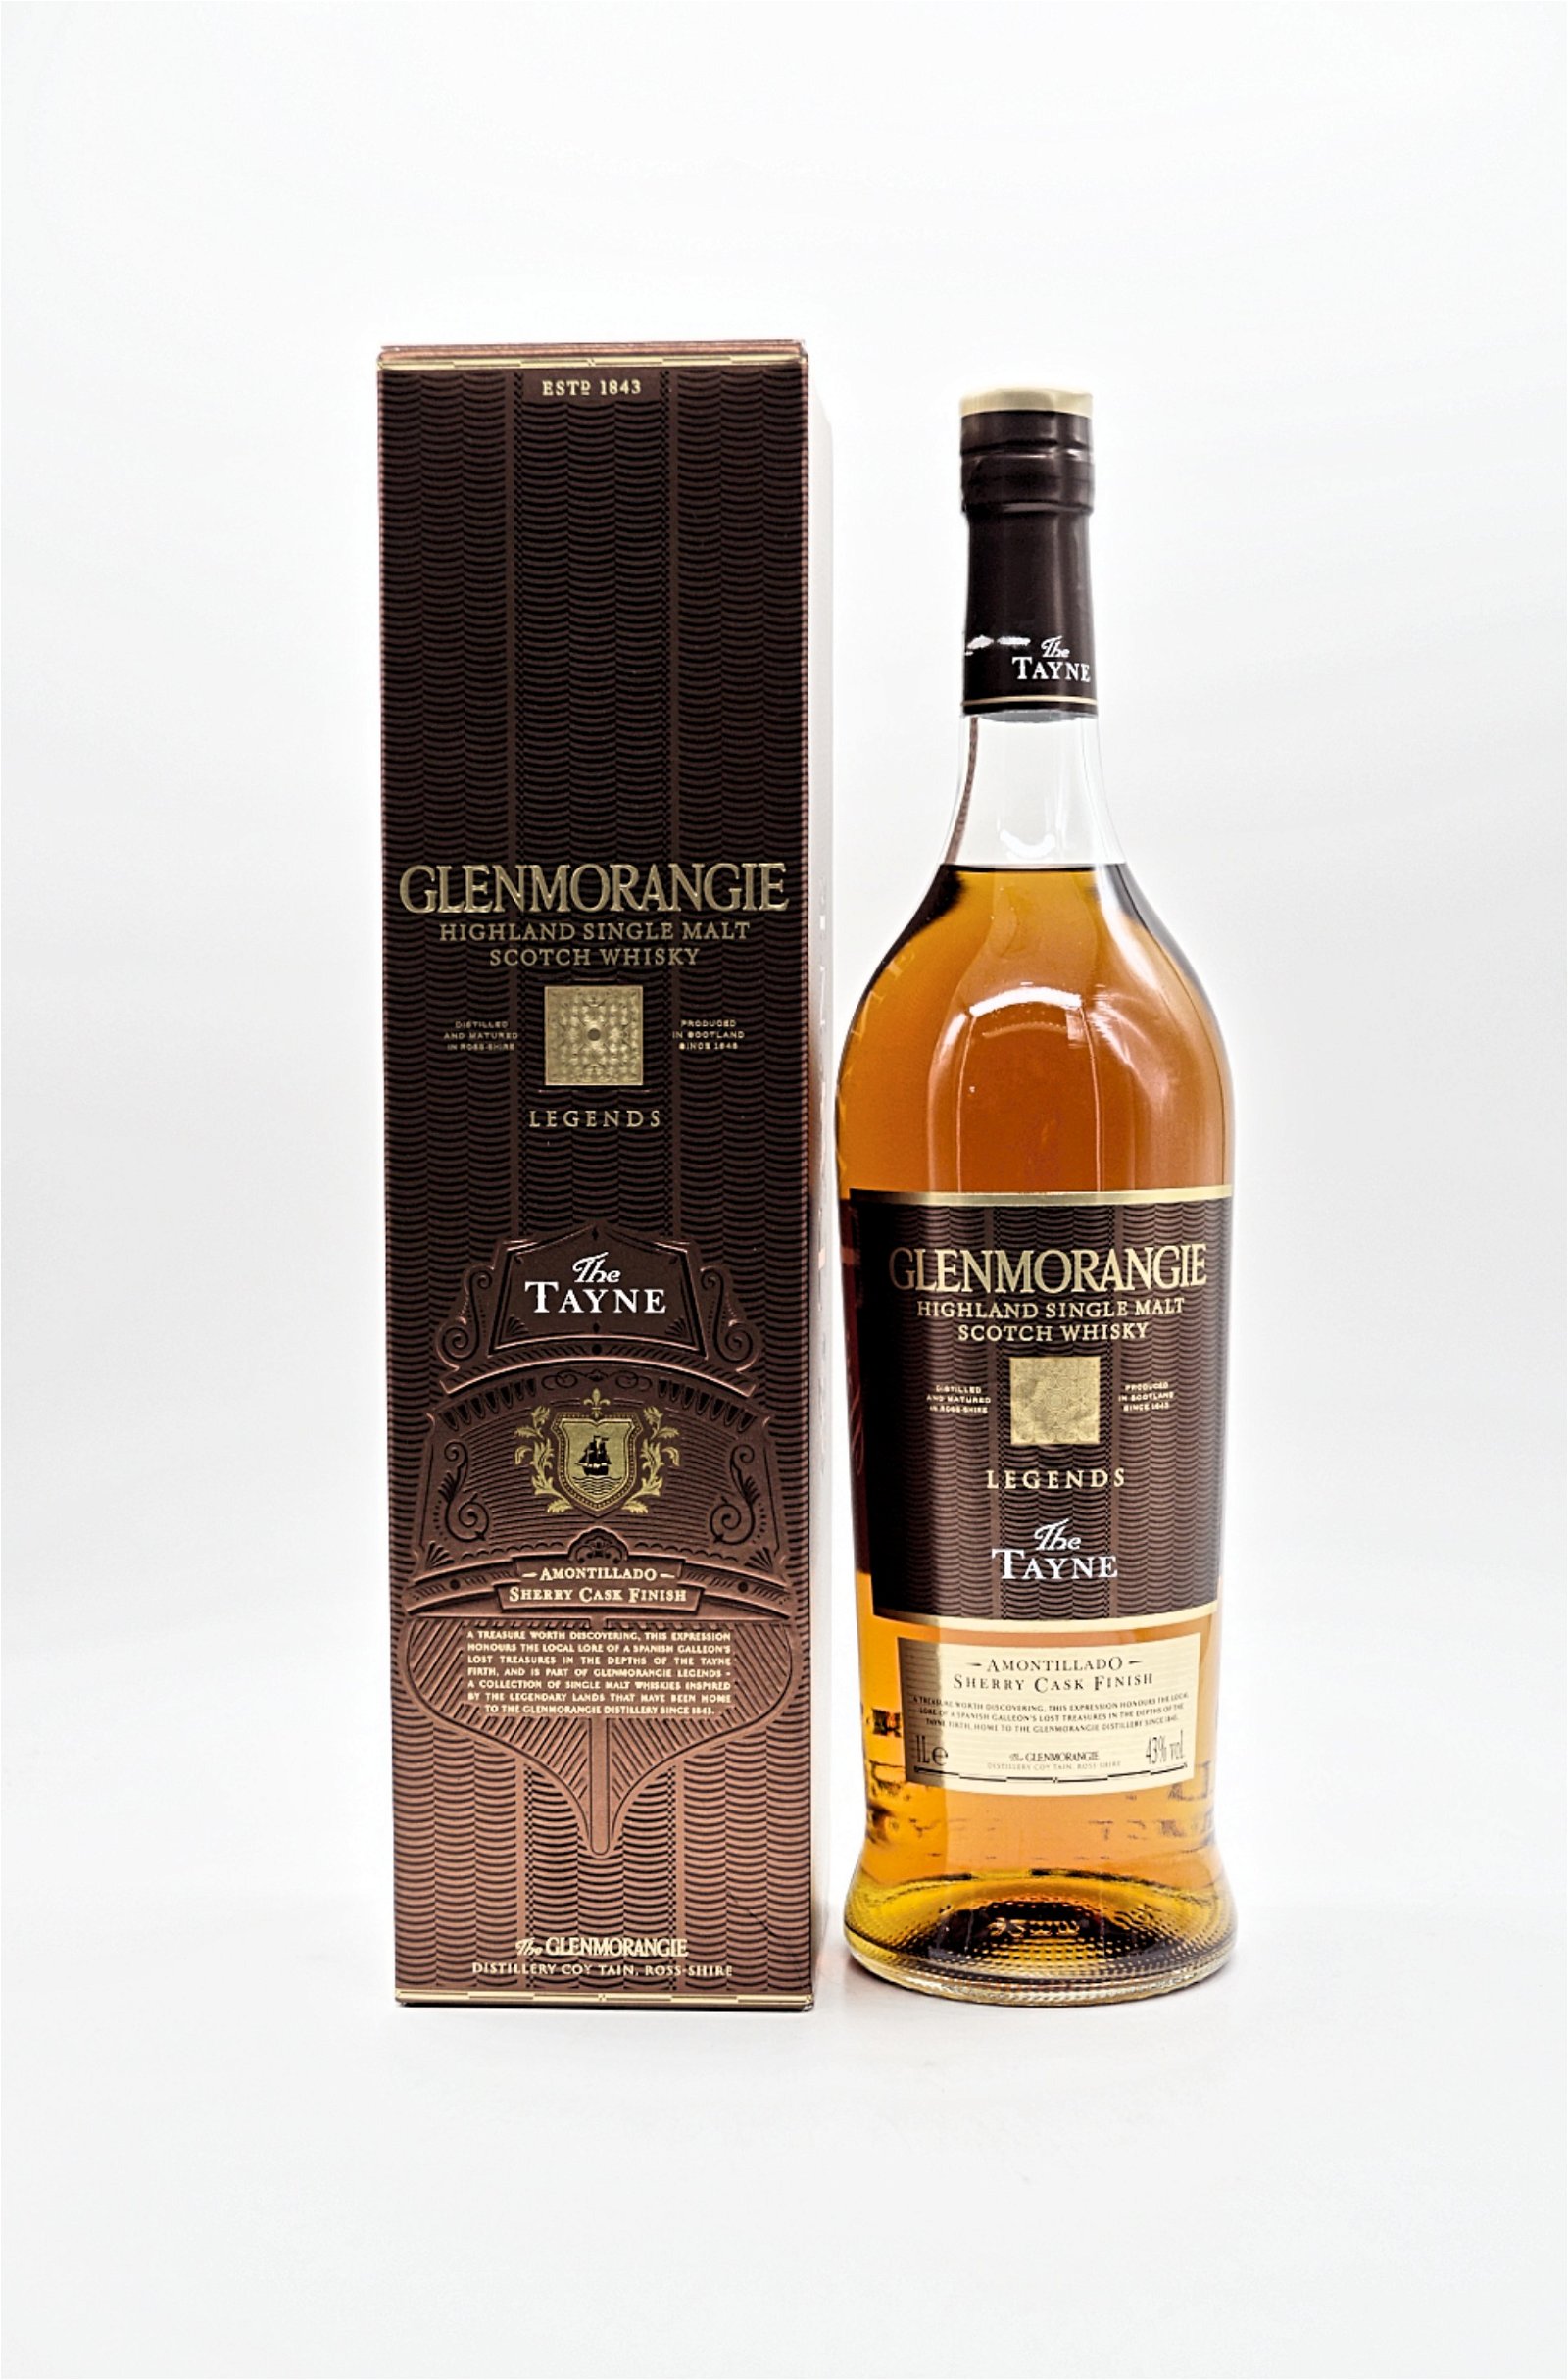 Glenmorangie The Tayne Amontillado Sherry Cask Finish Highland Single Malt Scotch Whisky